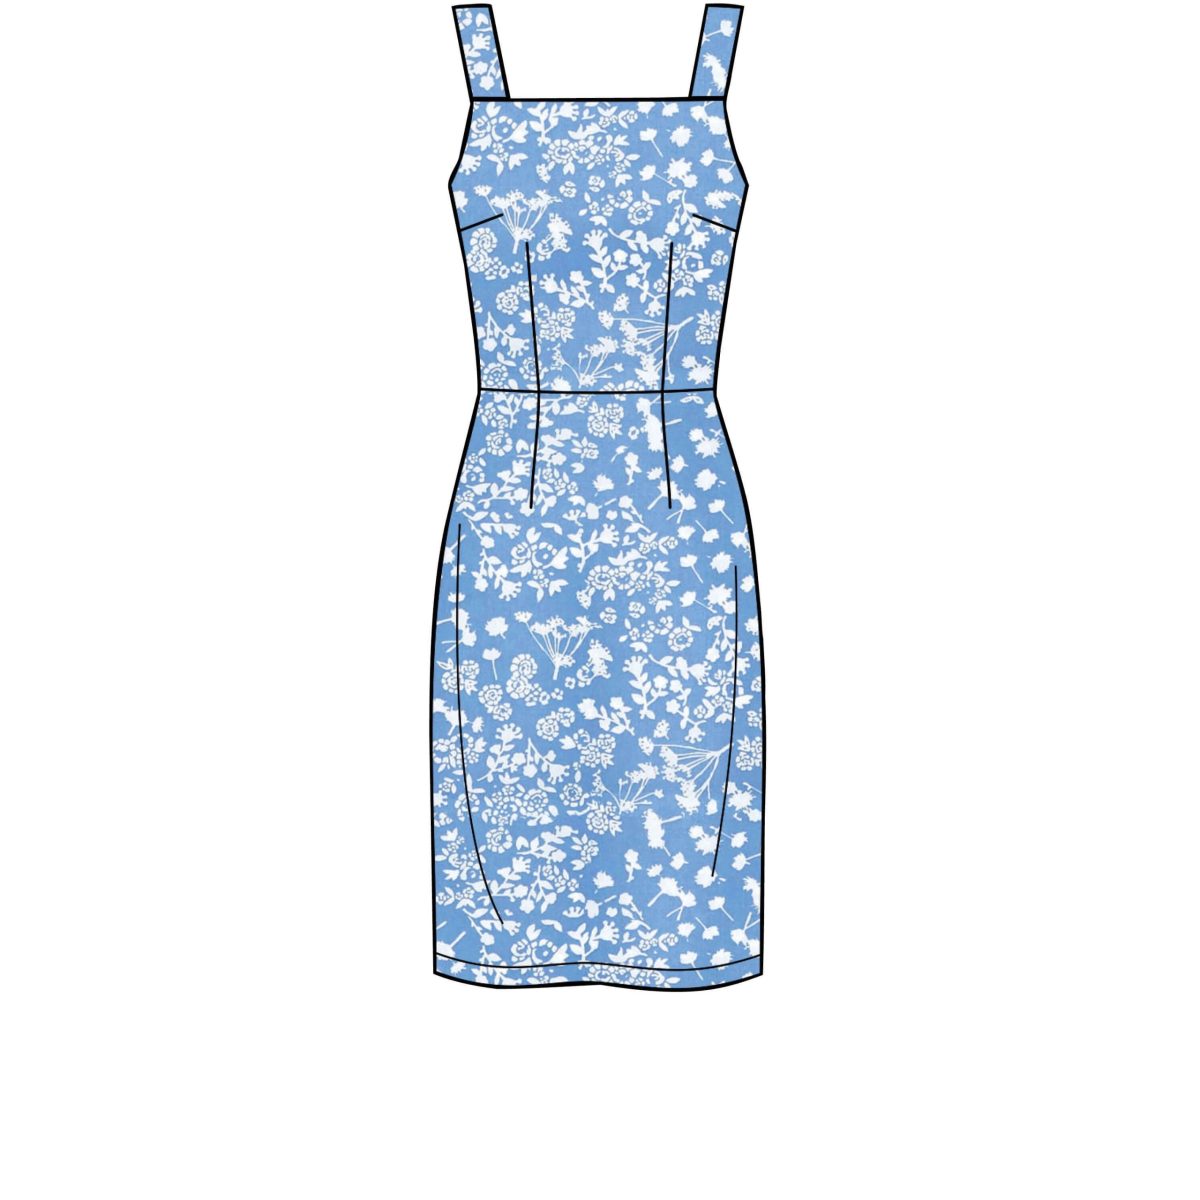 New Look Sewing Pattern N6615 Misses' Dresses